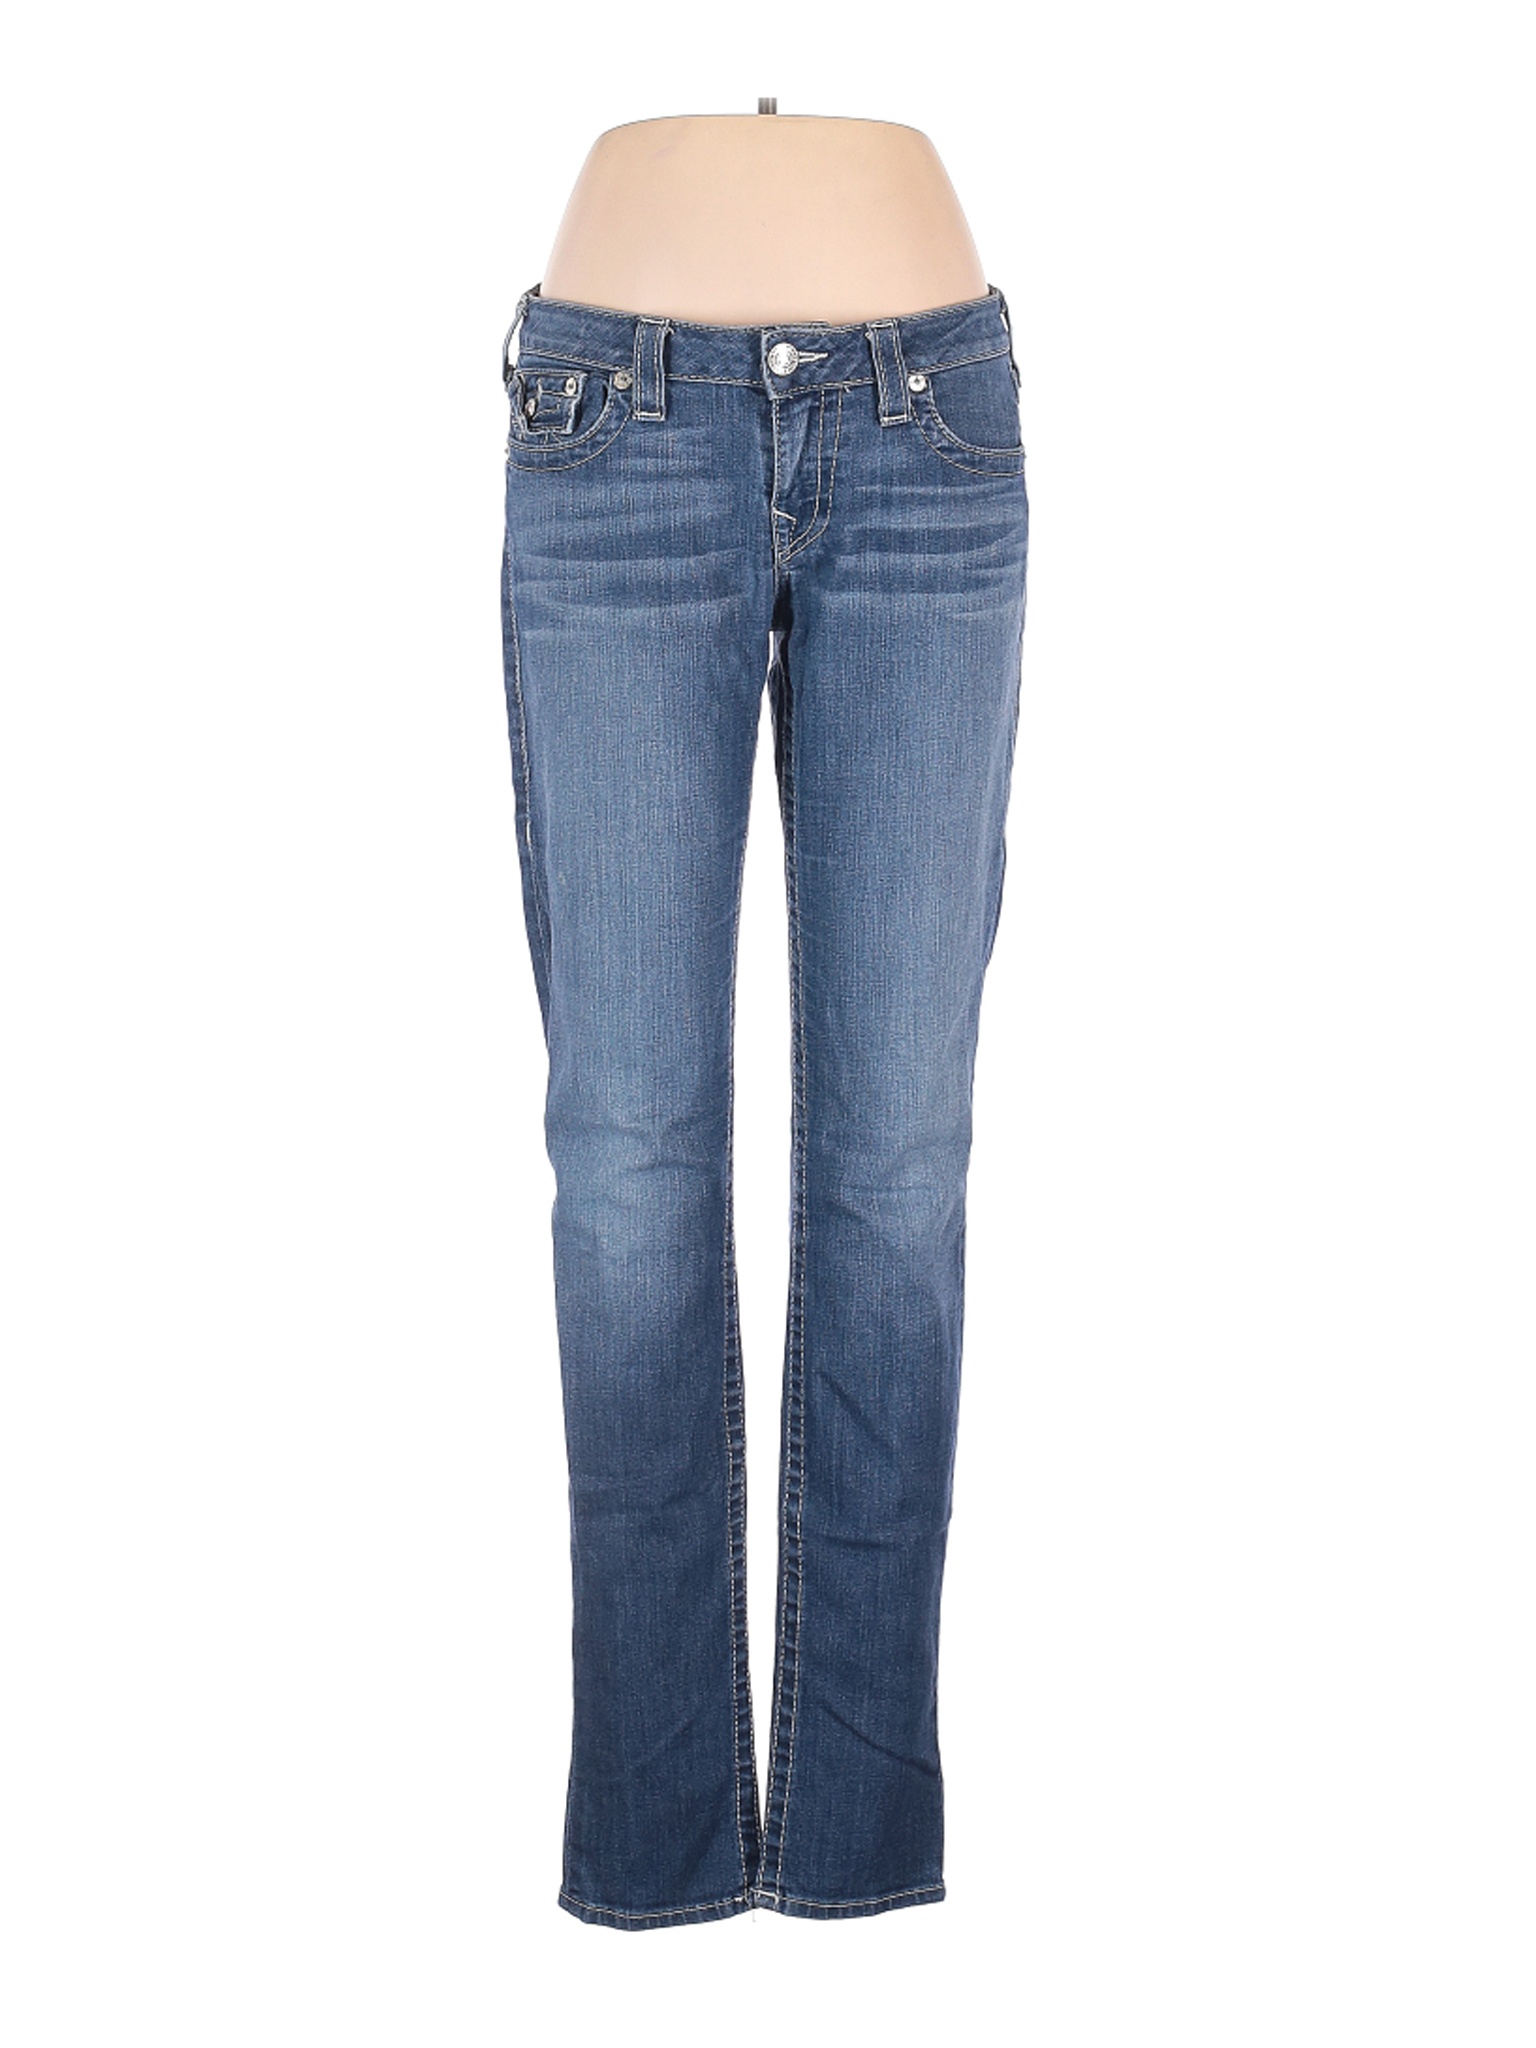 True Religion Outlet Women Blue Jeans 31W | eBay